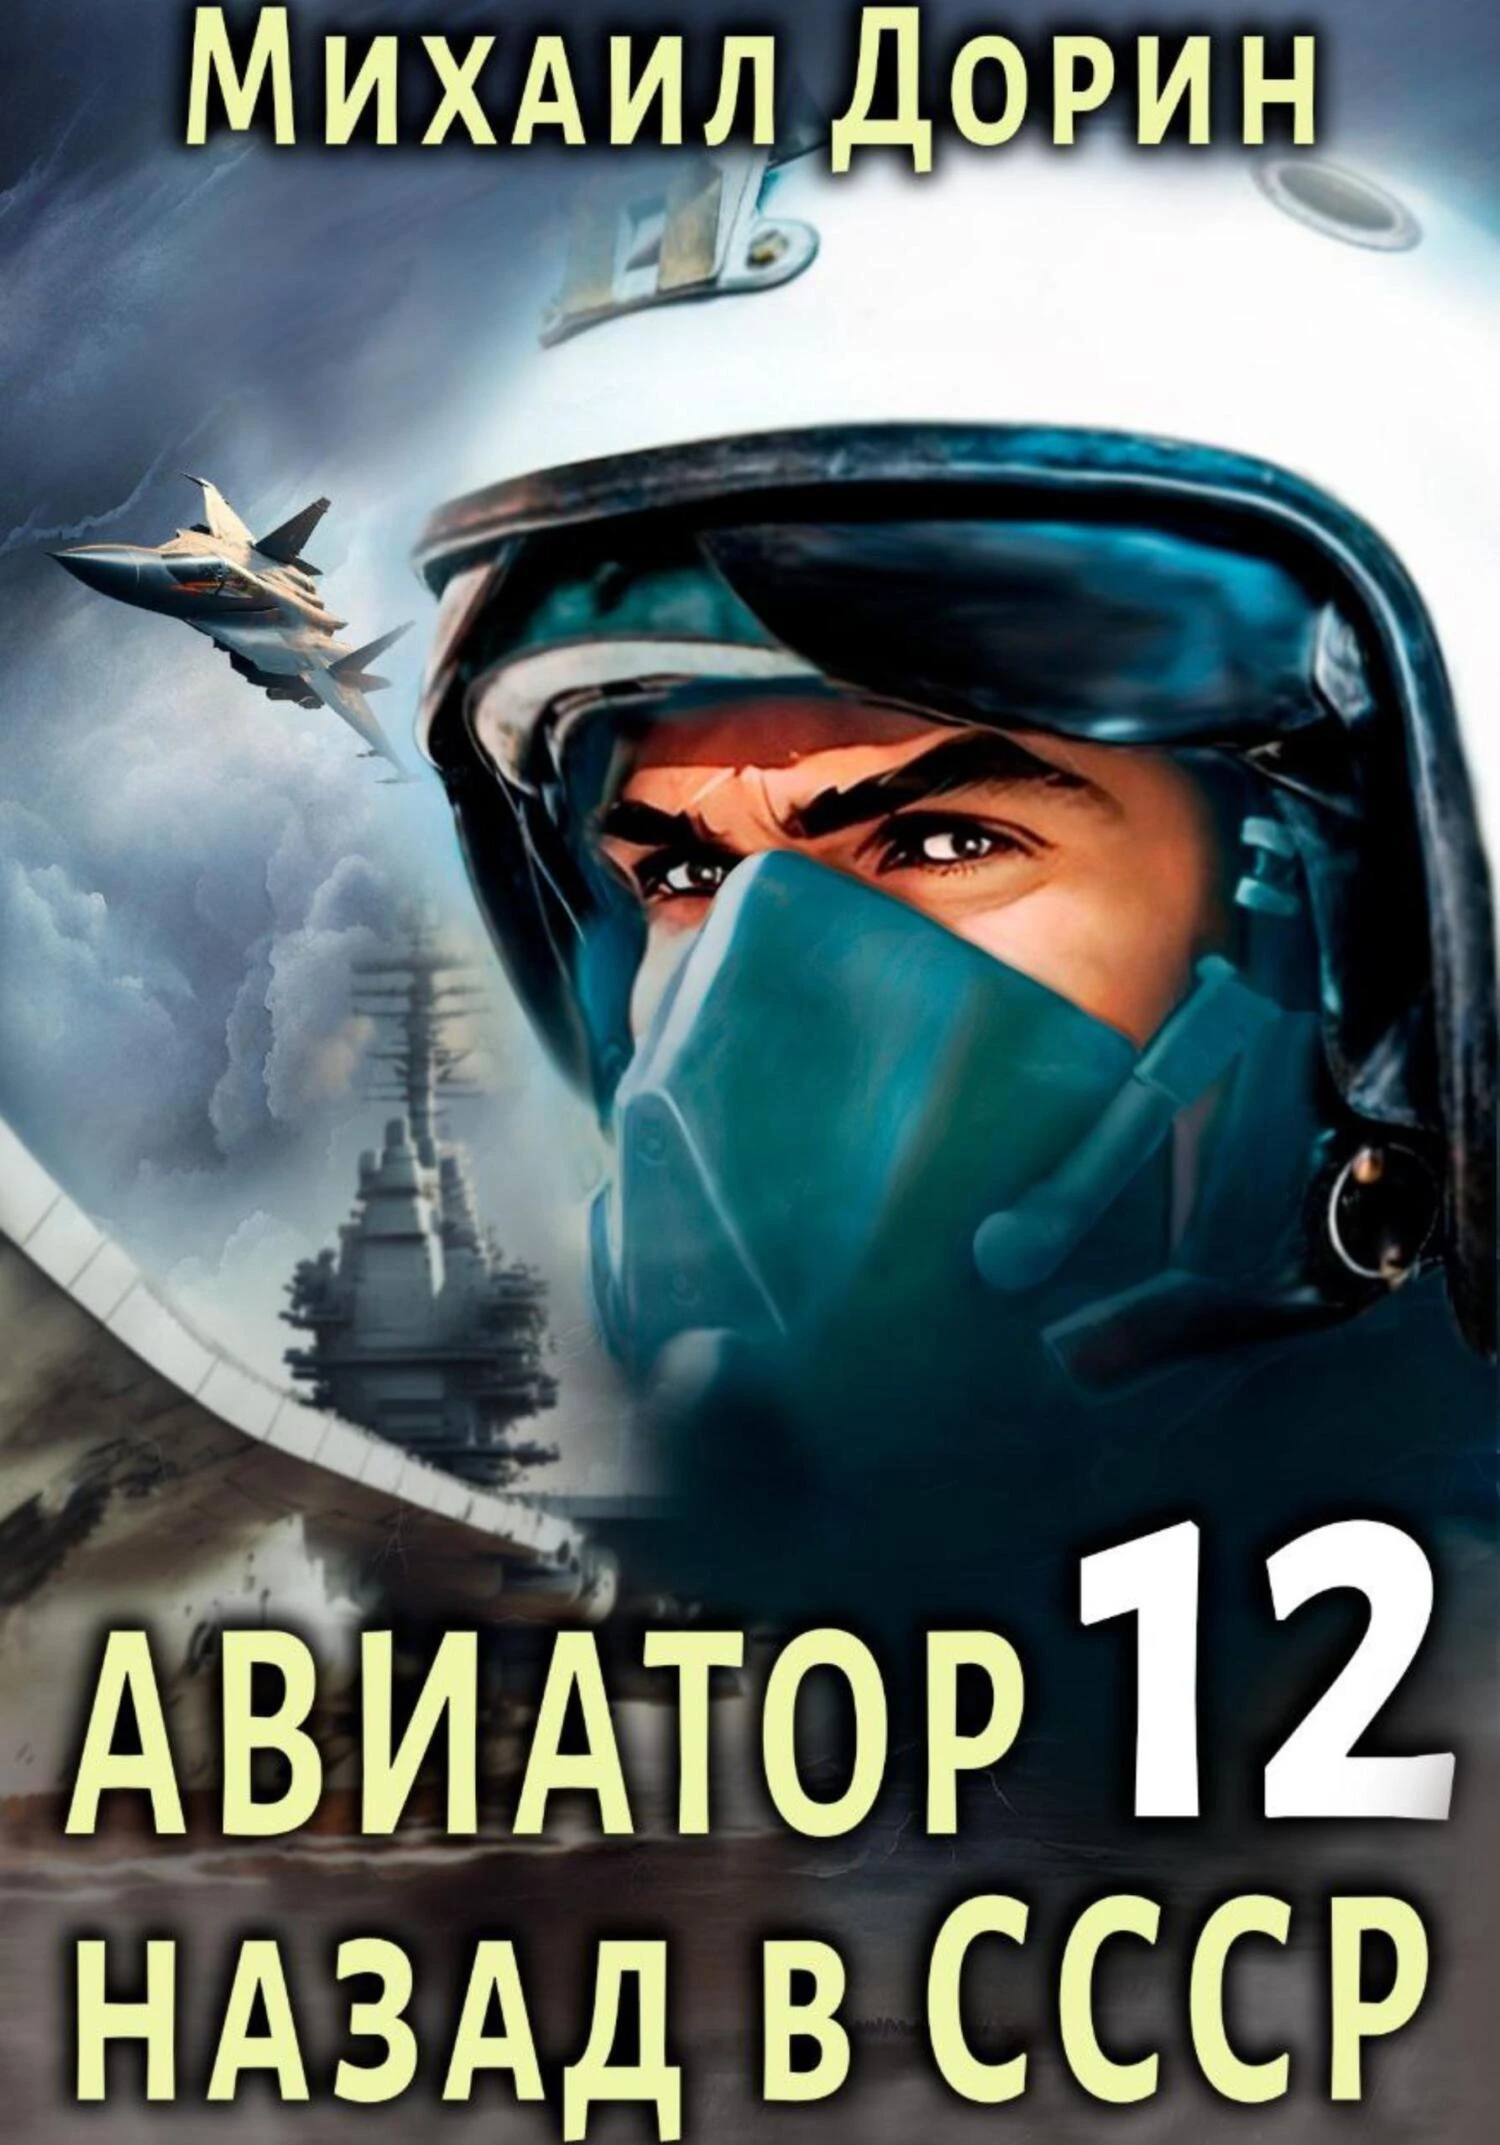 Авиатор: назад в СССР 12